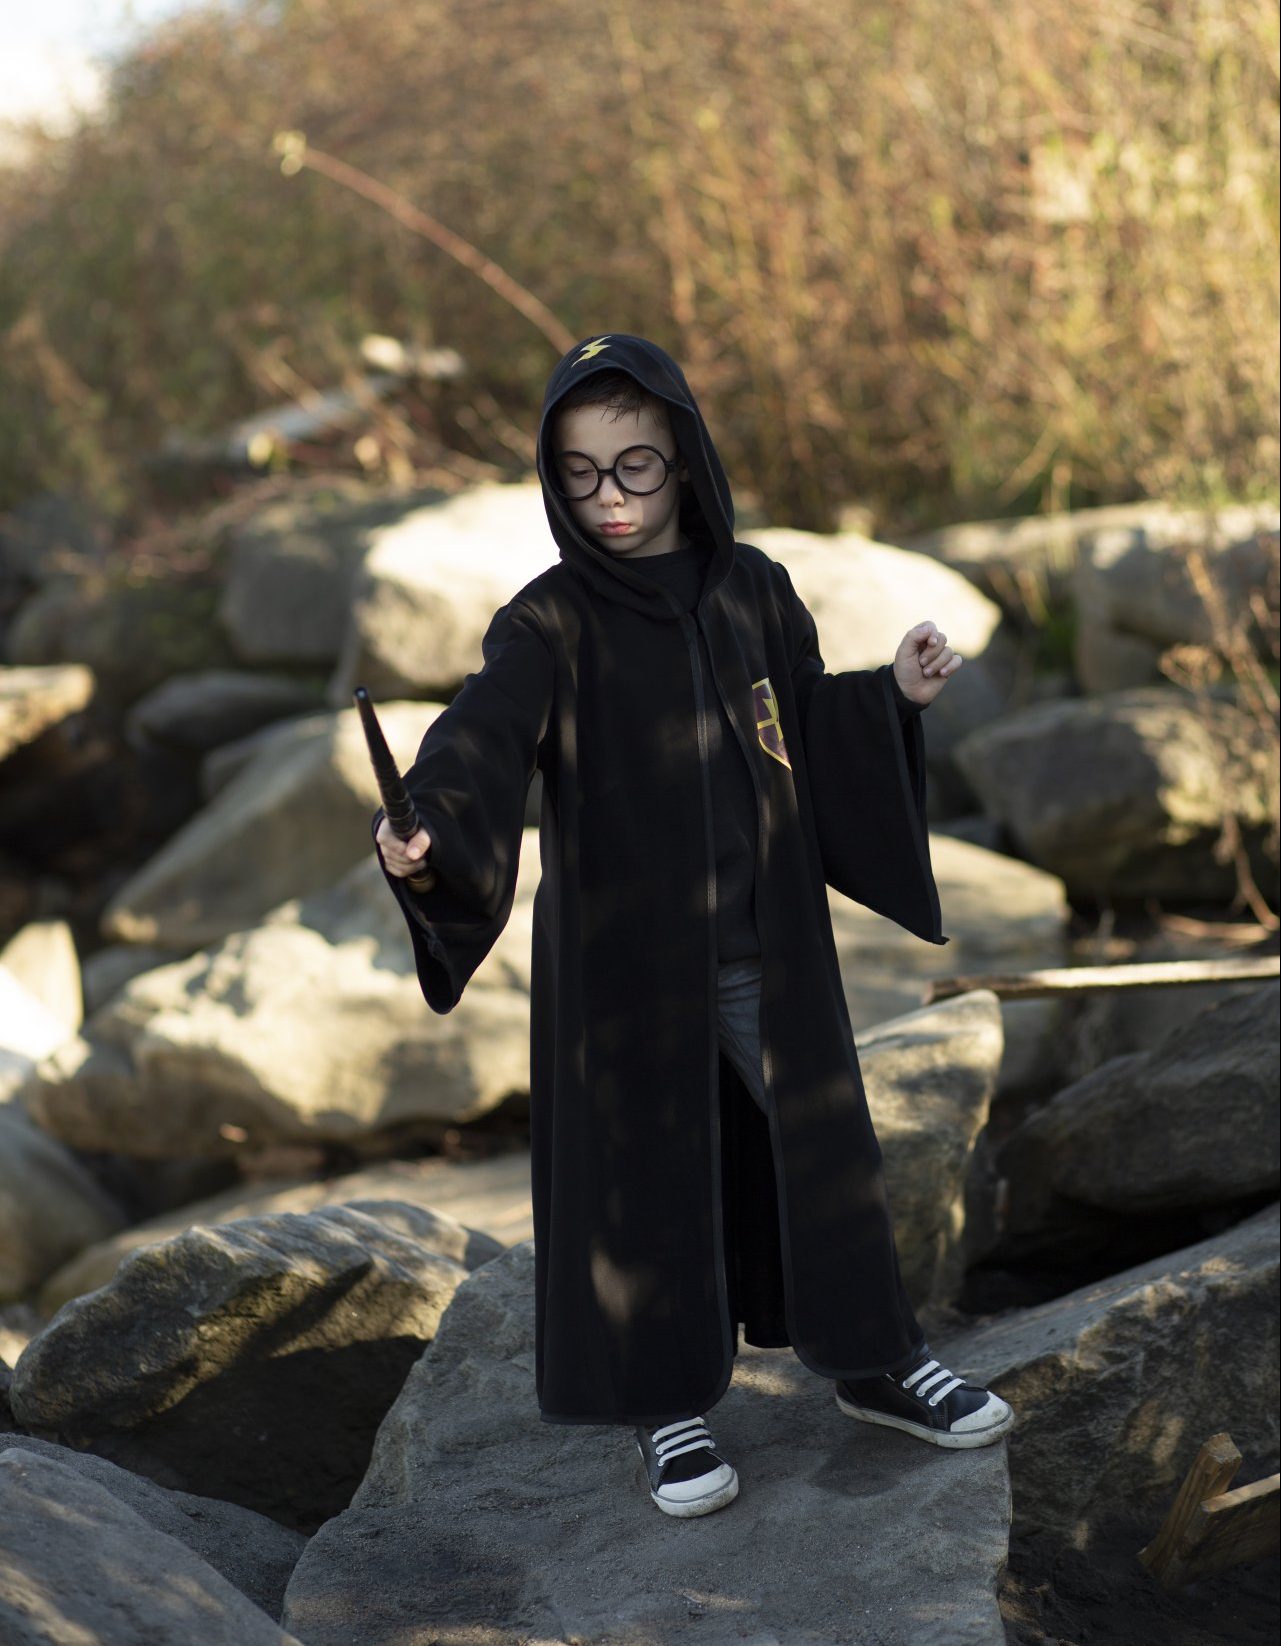 PIUMOJ Costume Harry Enfant, Costume de Magicien, Deguisement Potte